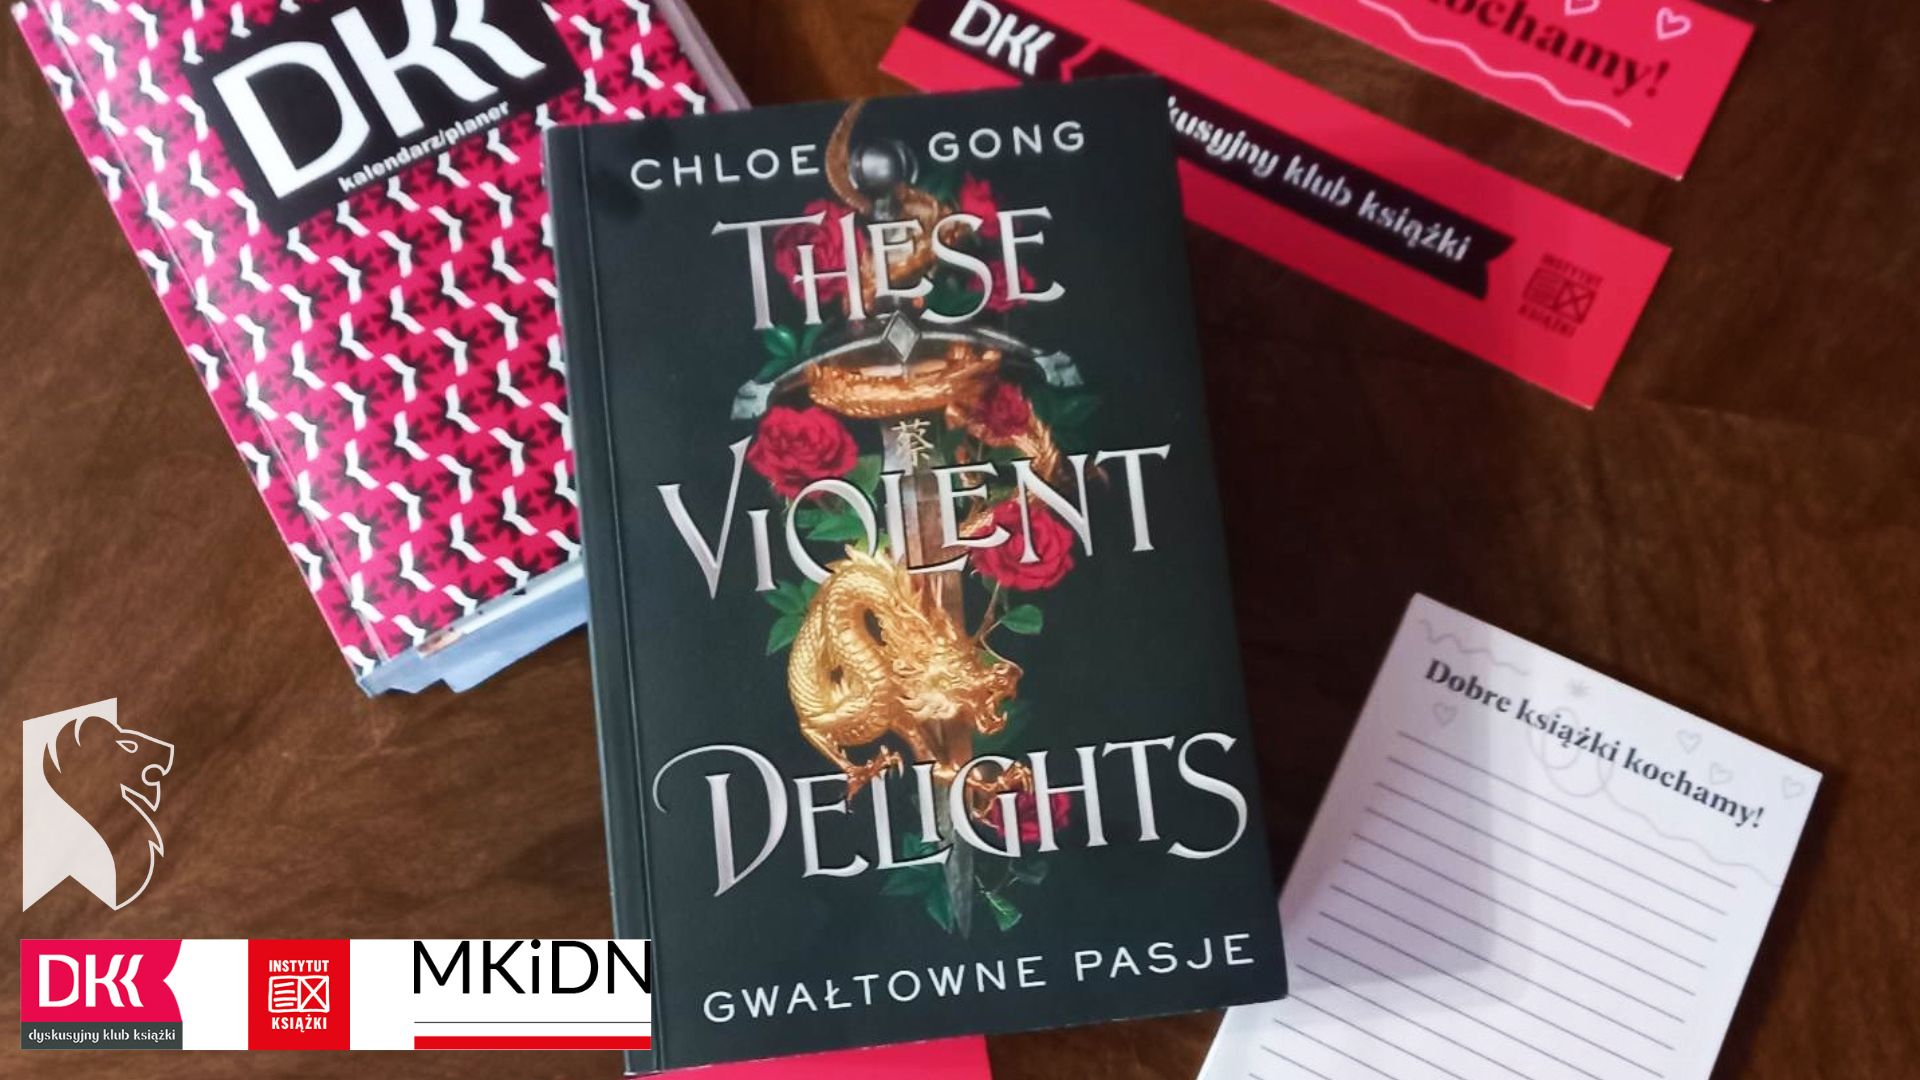 Wśród logotypów Dyskusyjnego Klubu Książki wyeksponowana została książka Chloe Gong pt. „These Violent Delights. Gwałtowne pasje”.